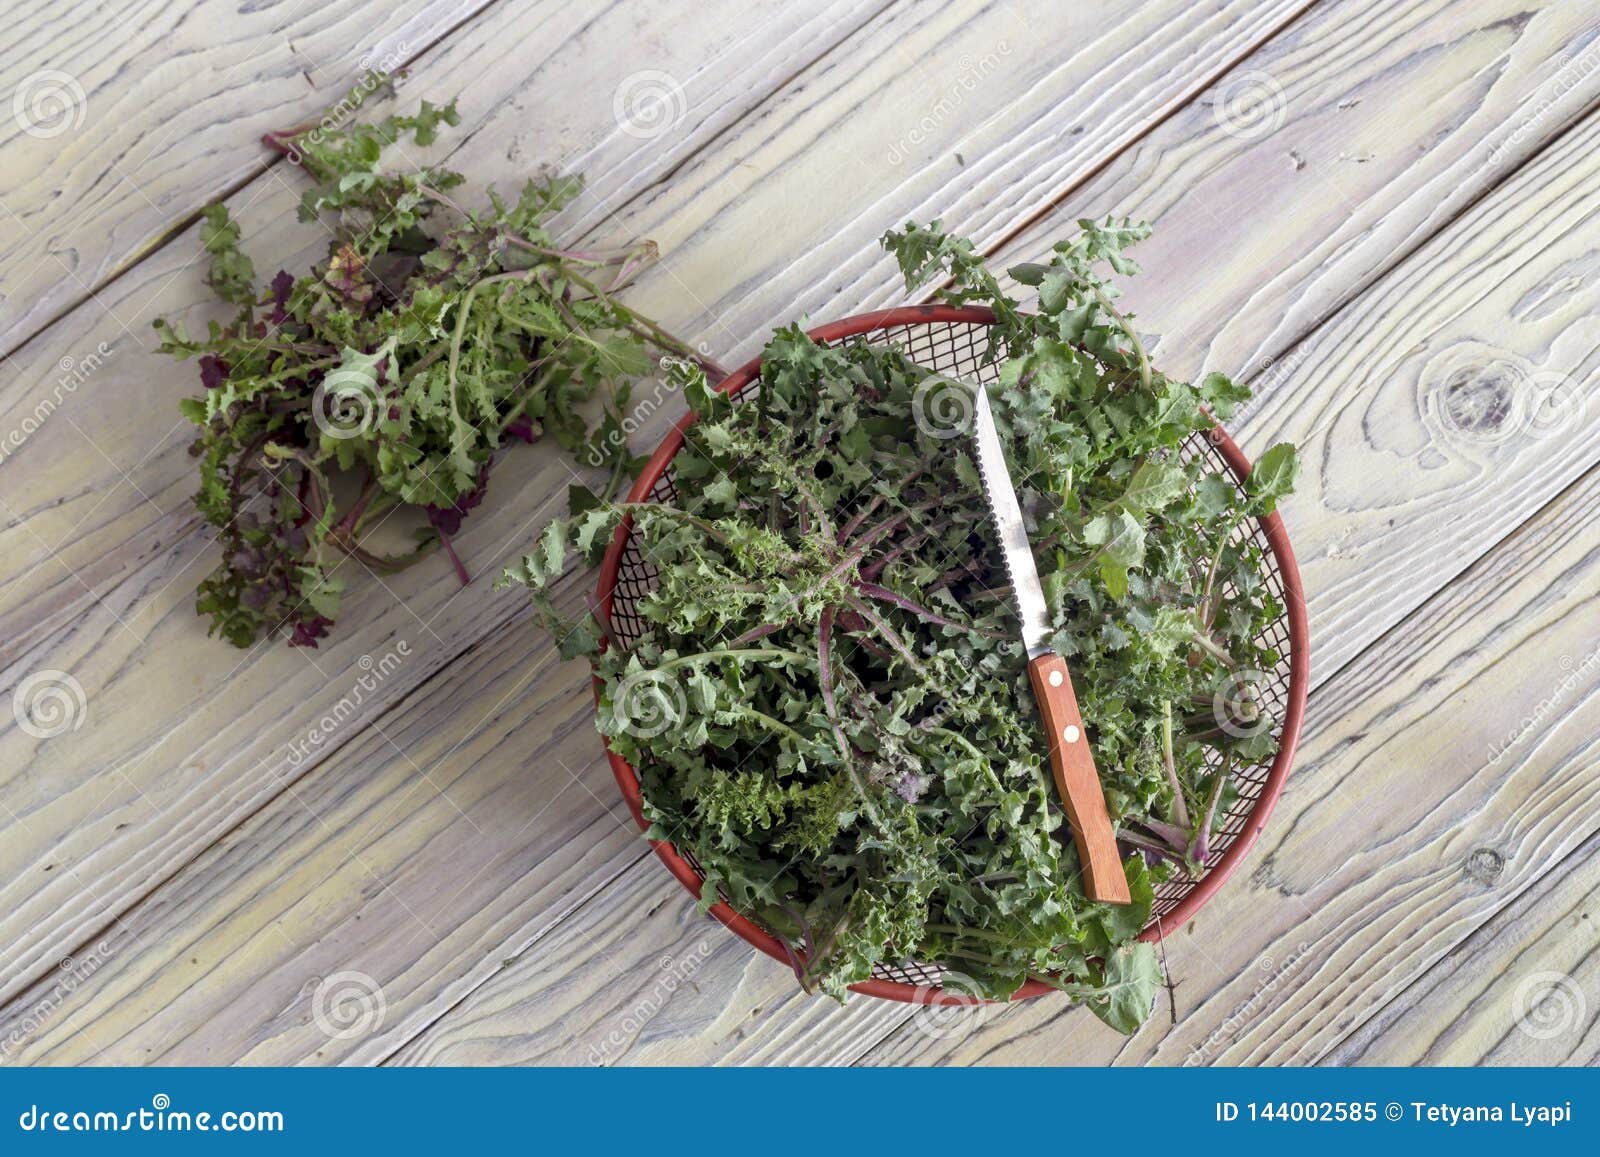 收获植物苣苦菜在木桌希腊烹调的苣苦菜oleraceus 库存图片 图片包括有烹调 四季不断